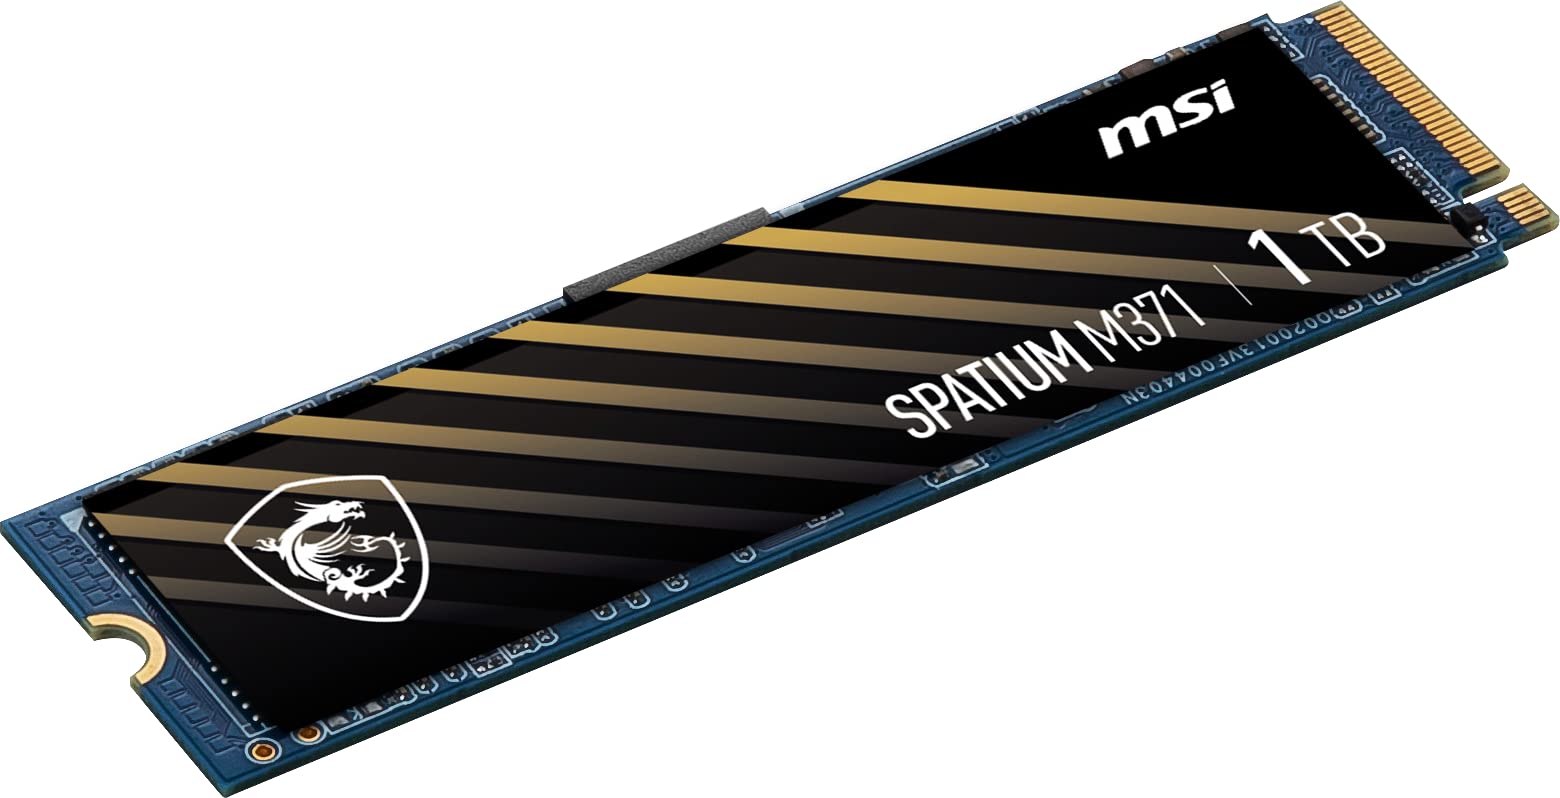 MSI Spatium M371 NVMe M.2 1TB PCIe Gen 3 $34.99 shipped @ Amazon